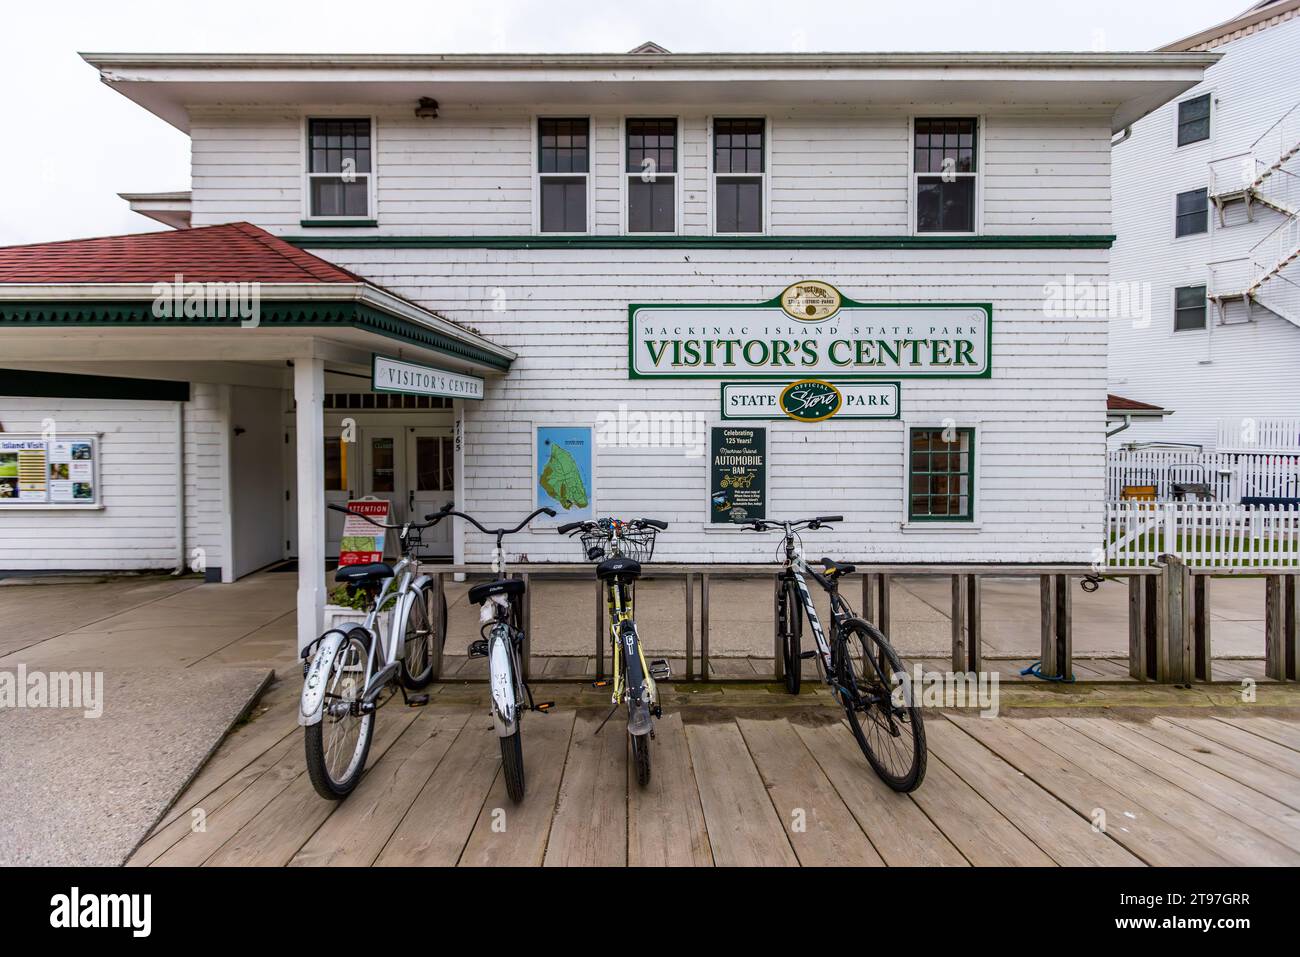 Centre d'accueil sur main Street avec des vélos garés ici, les visiteurs peuvent obtenir des informations sur toutes les attractions du parc d'État de Mackinac Island. Mackinac Island, Michigan, États-Unis Banque D'Images